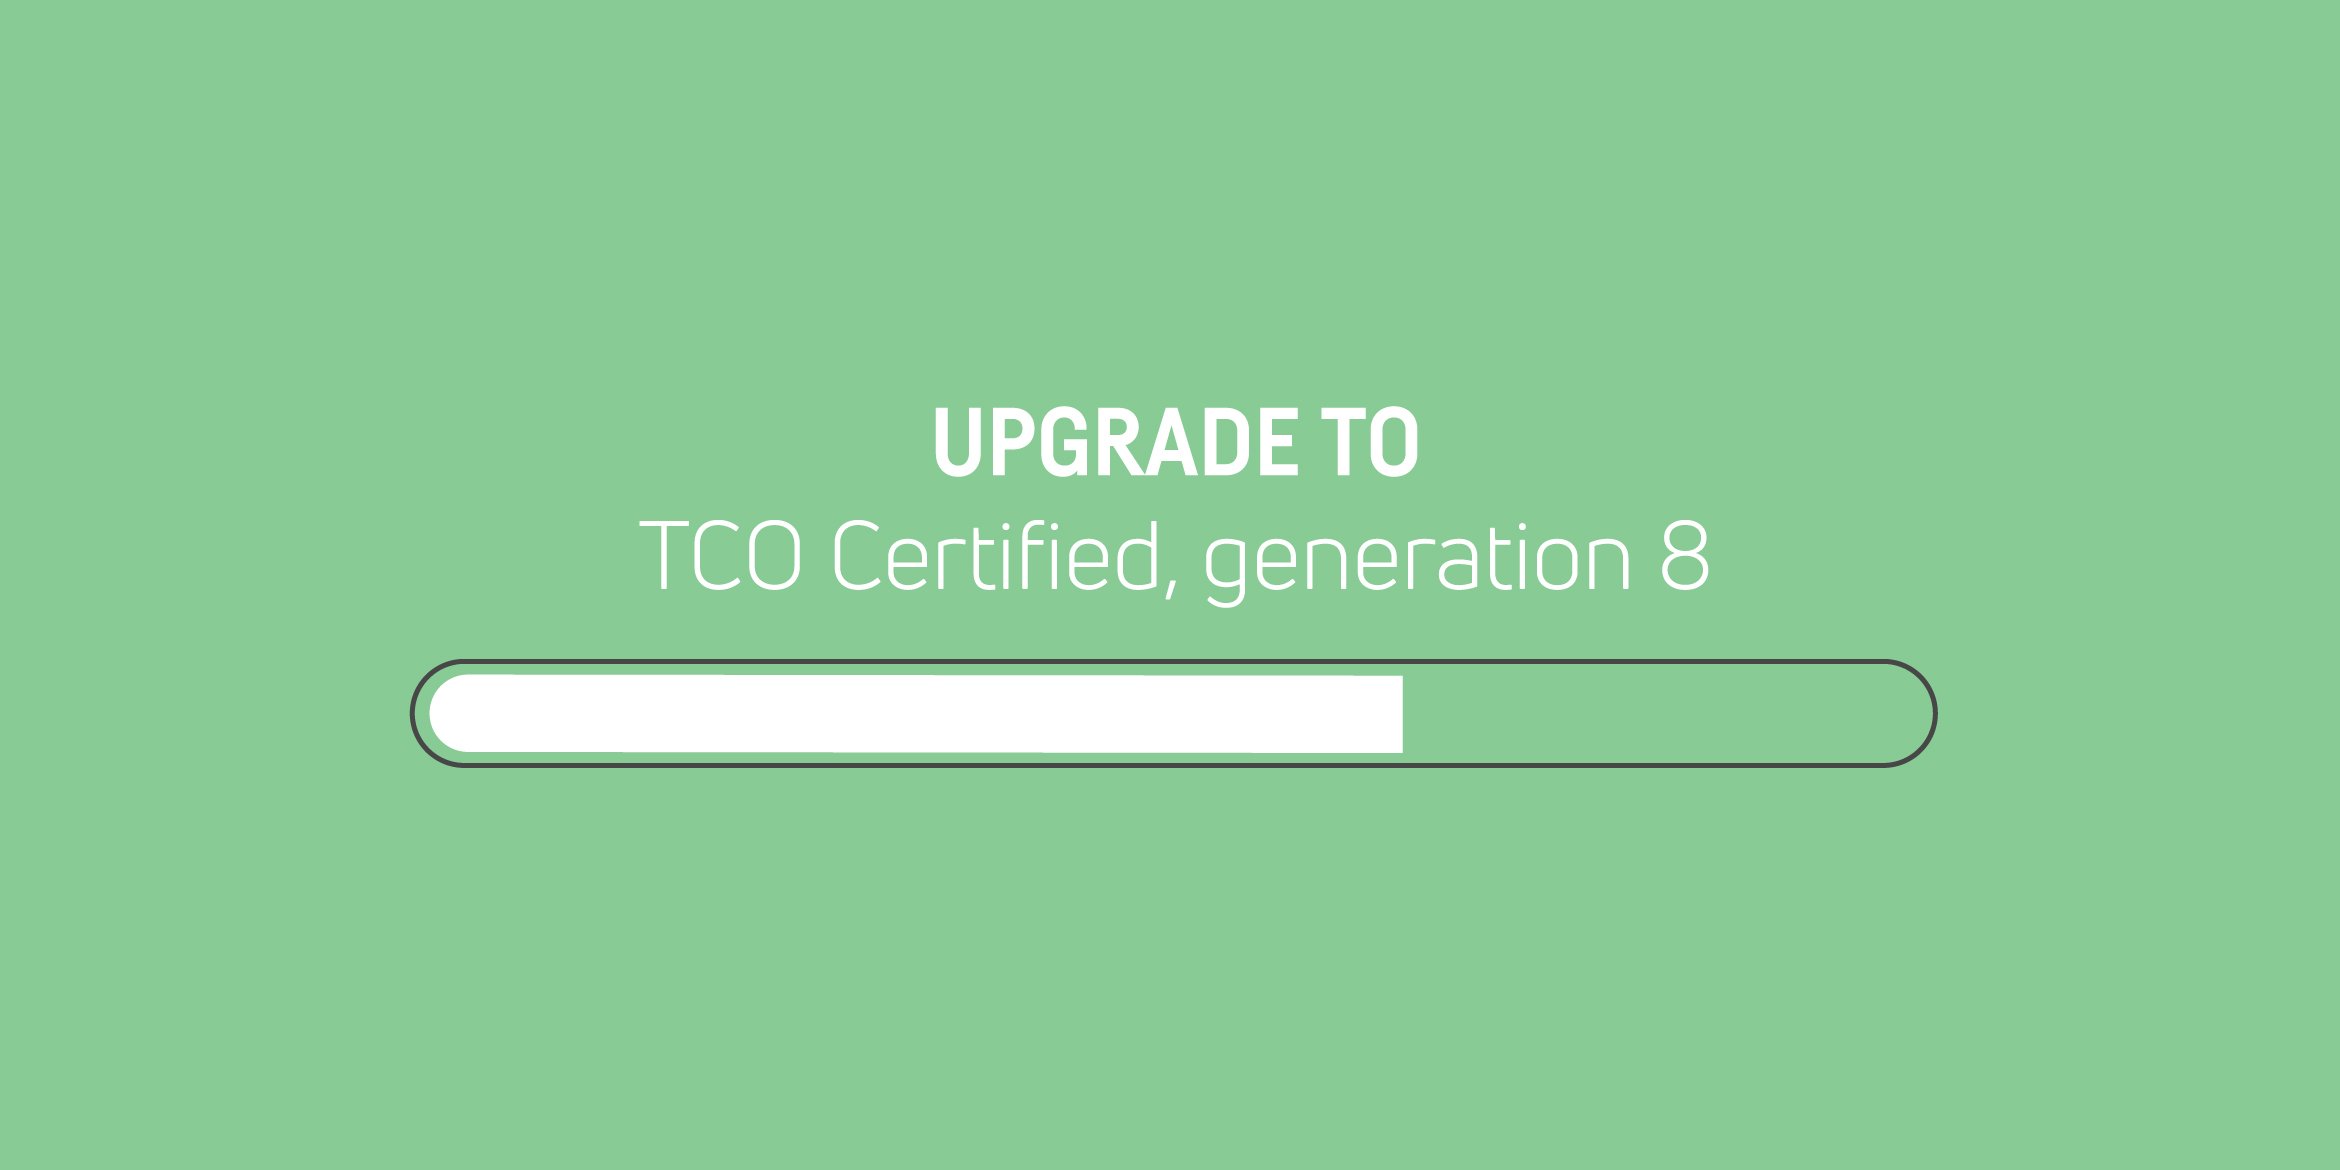 上一代 TCO Certified 已停產 — 升級您的證書